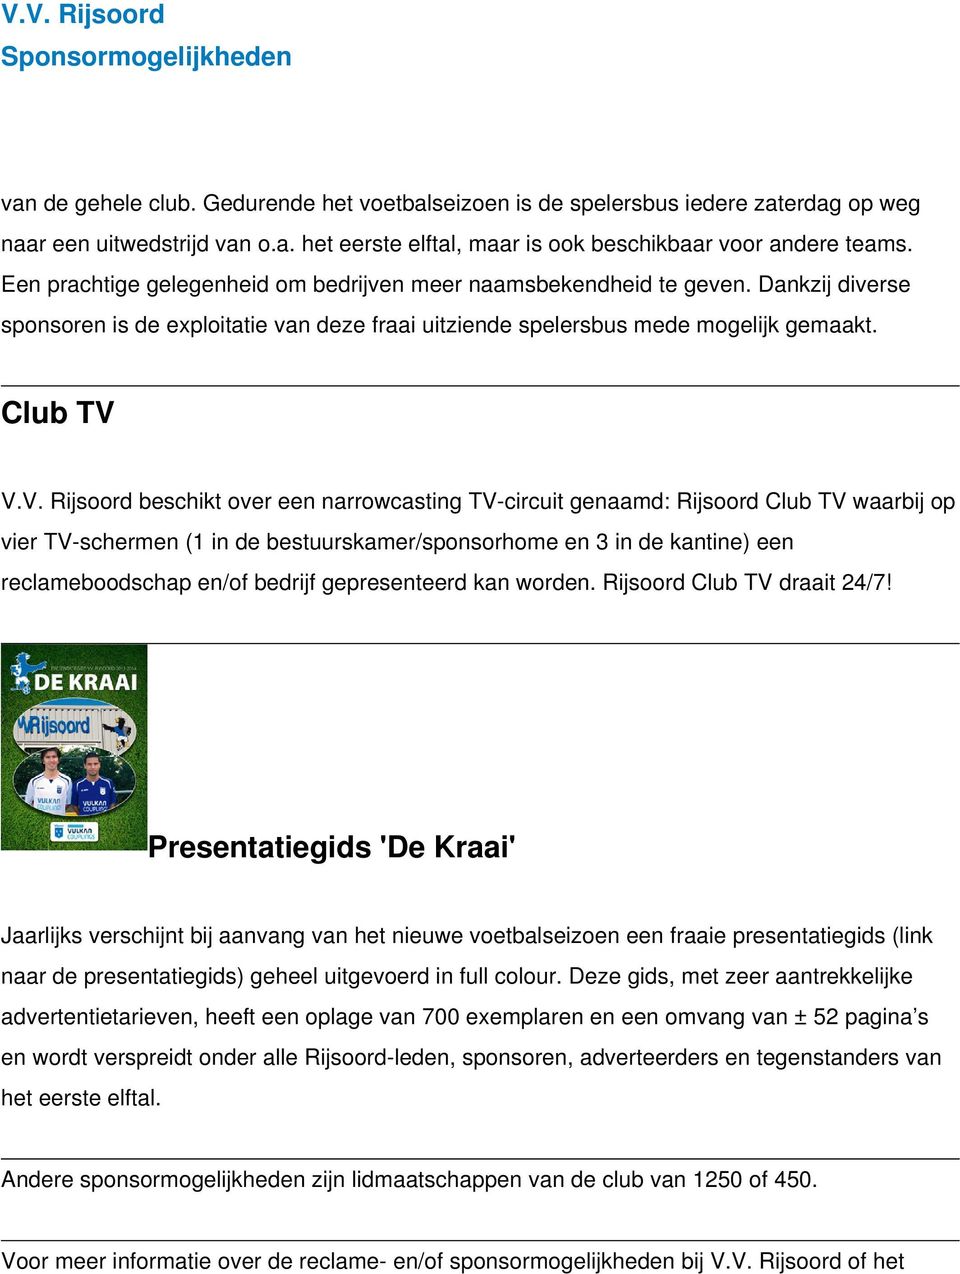 V.V. Rijsoord beschikt over een narrowcasting TV-circuit genaamd: Rijsoord Club TV waarbij op vier TV-schermen (1 in de bestuurskamer/sponsorhome en 3 in de kantine) een reclameboodschap en/of